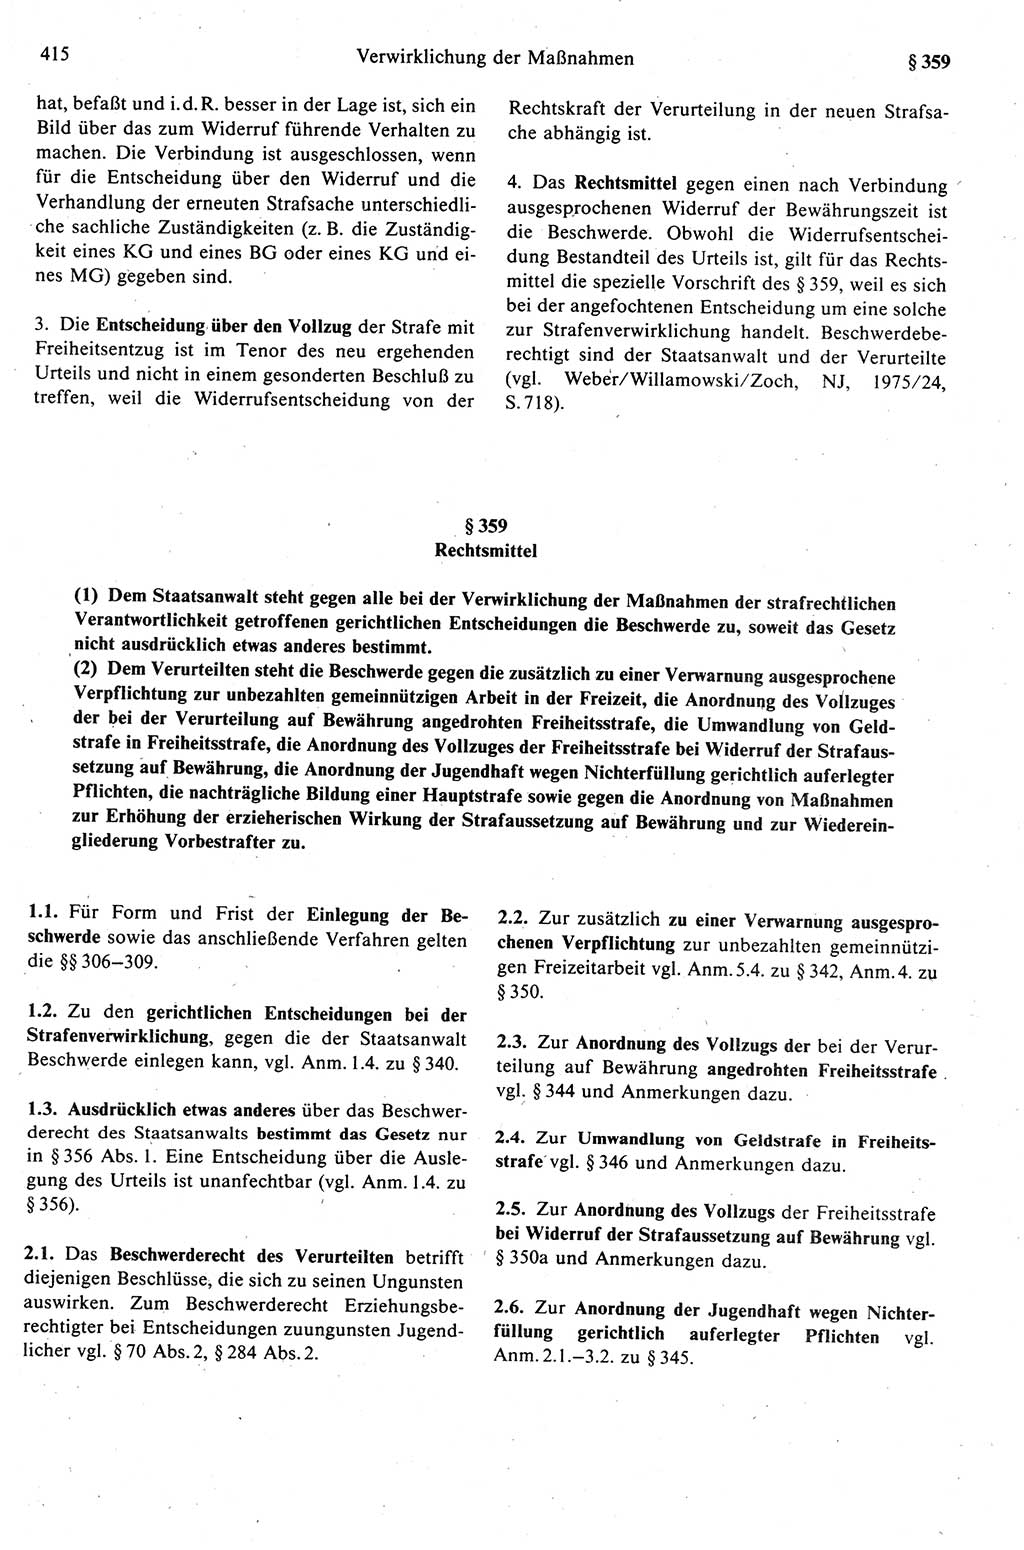 Strafprozeßrecht der DDR (Deutsche Demokratische Republik), Kommentar zur Strafprozeßordnung (StPO) 1989, Seite 415 (Strafprozeßr. DDR Komm. StPO 1989, S. 415)